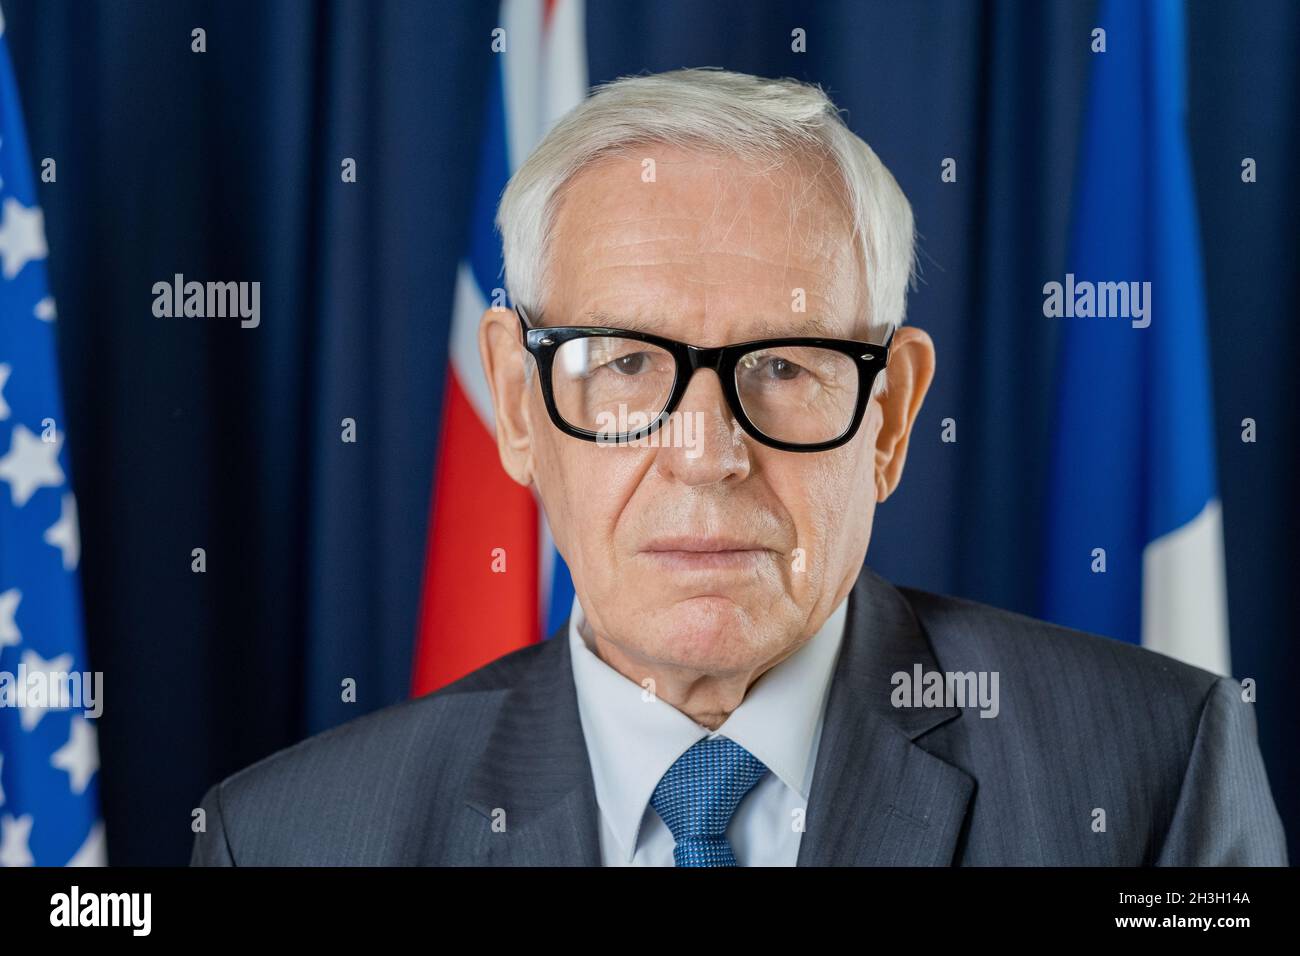 Ritratto di uomo politico serio e fiducioso in occhiali in piedi contro bandiere e tende blu scuro Foto Stock